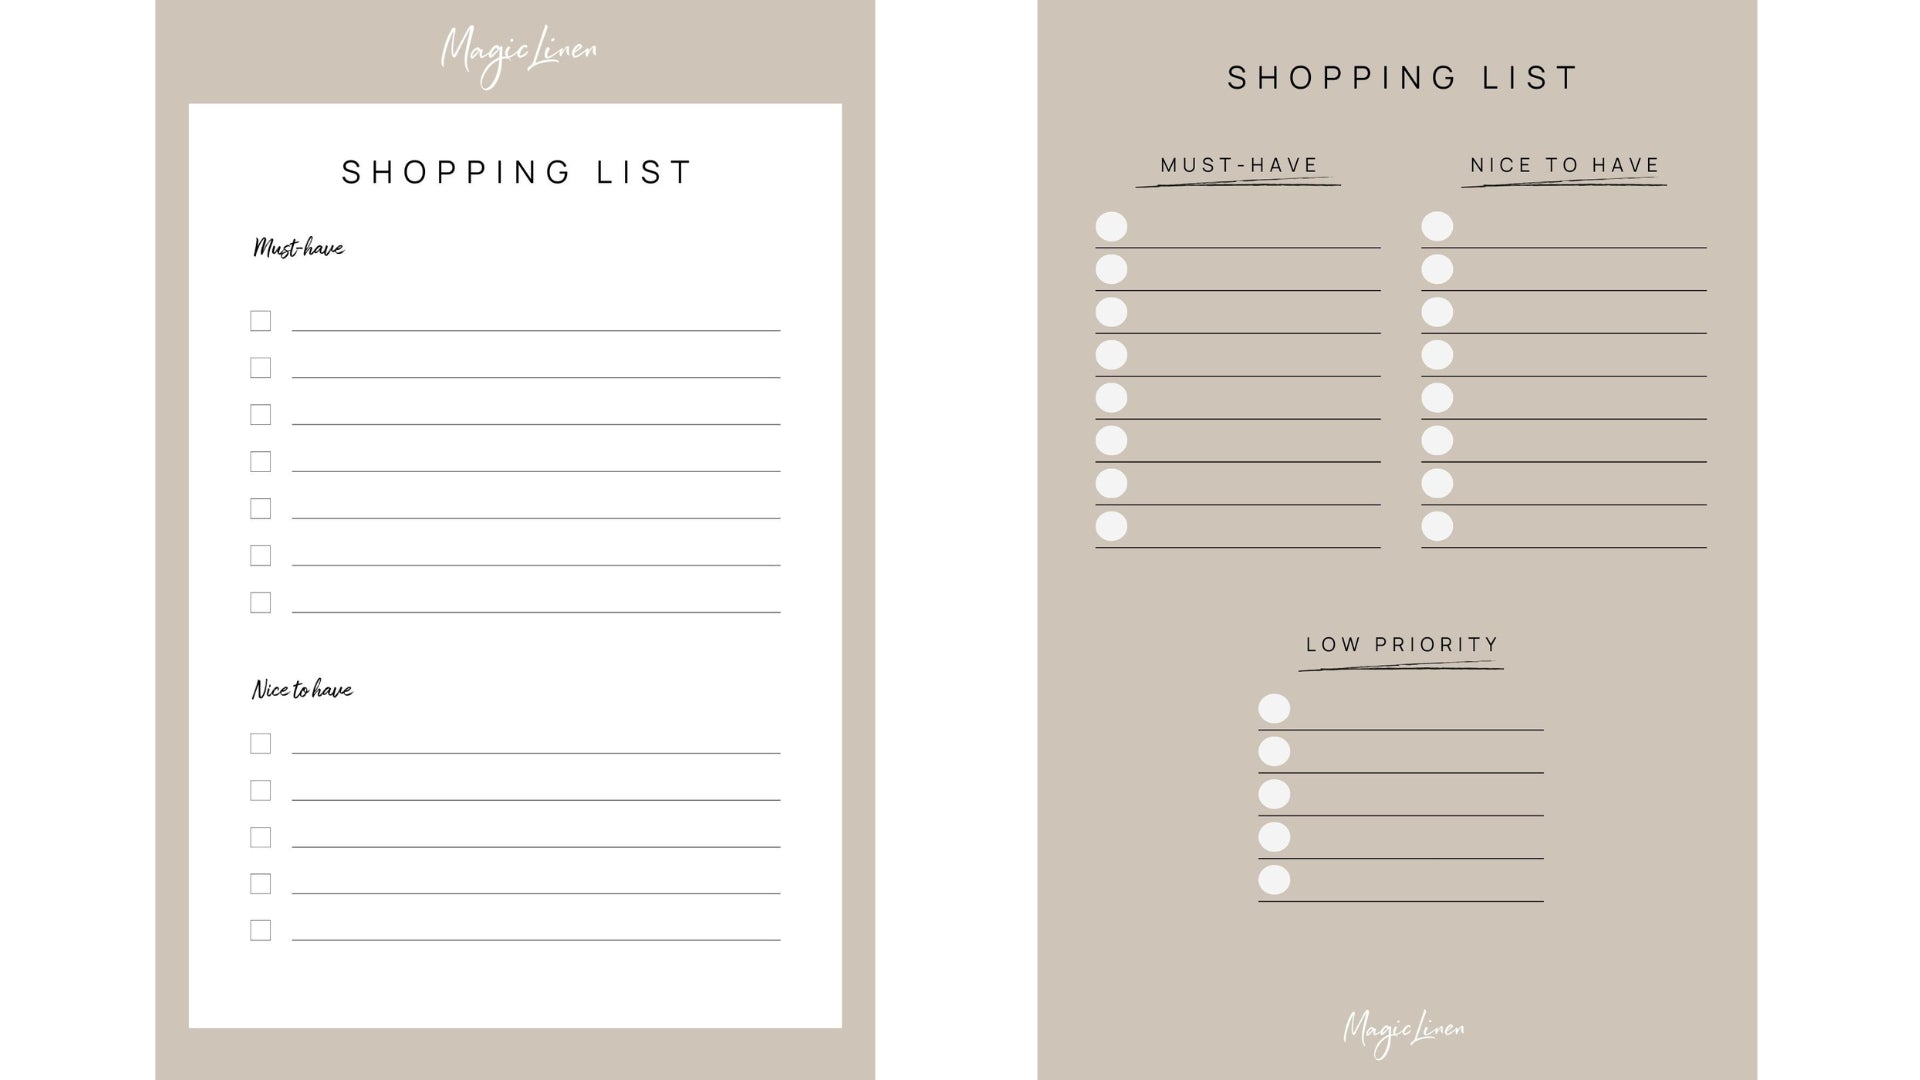 MagicLinen's Shopping Lists